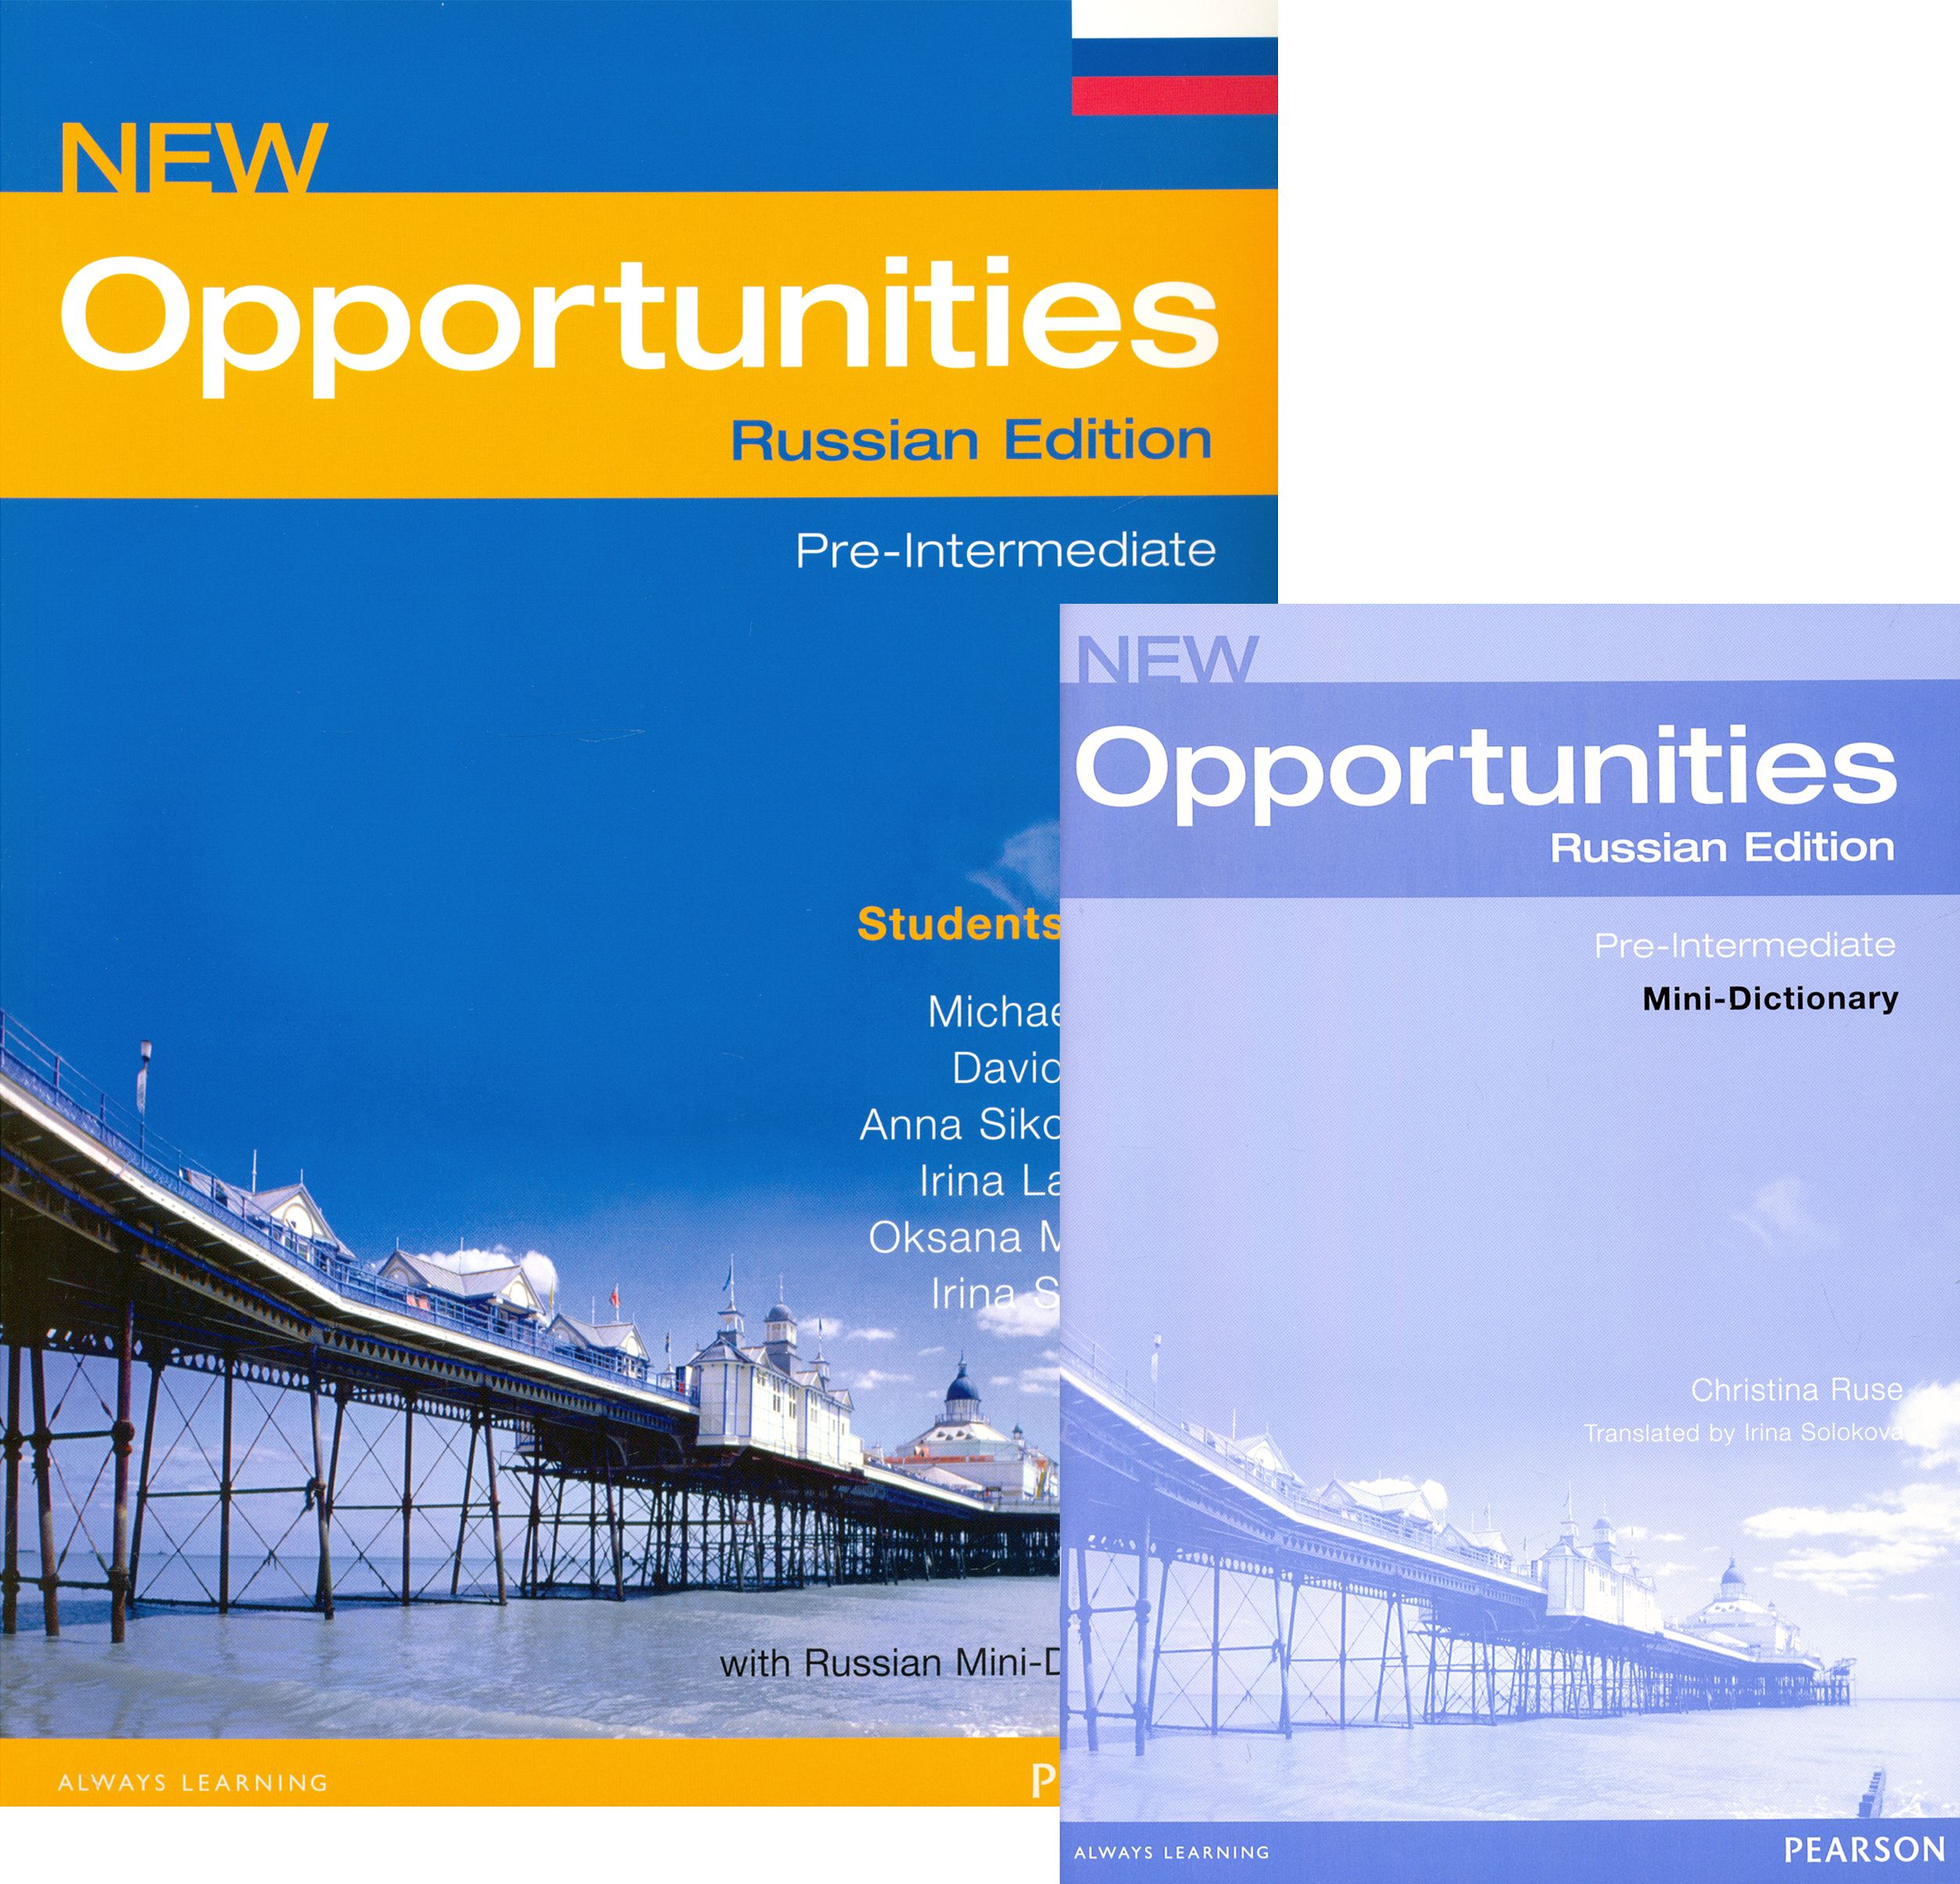 New opportunities book. Opportunities учебник. New opportunities Intermediate student's book. Все книги New opportunities. New opportunities pre-Intermediate.